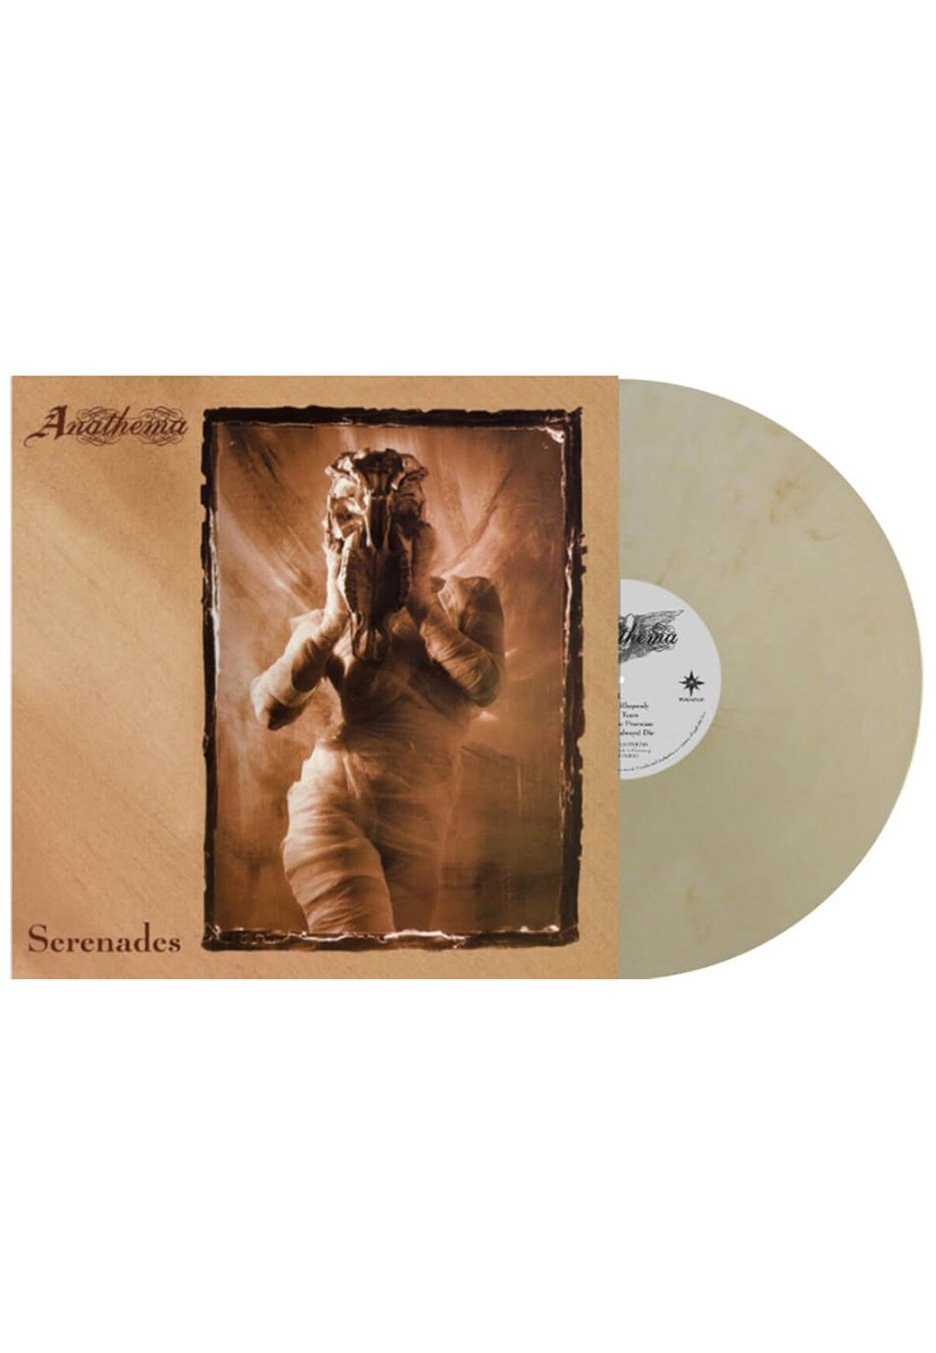 Anathema - Serenades-30Th Anniversary White/Brown - Colored Vinyl